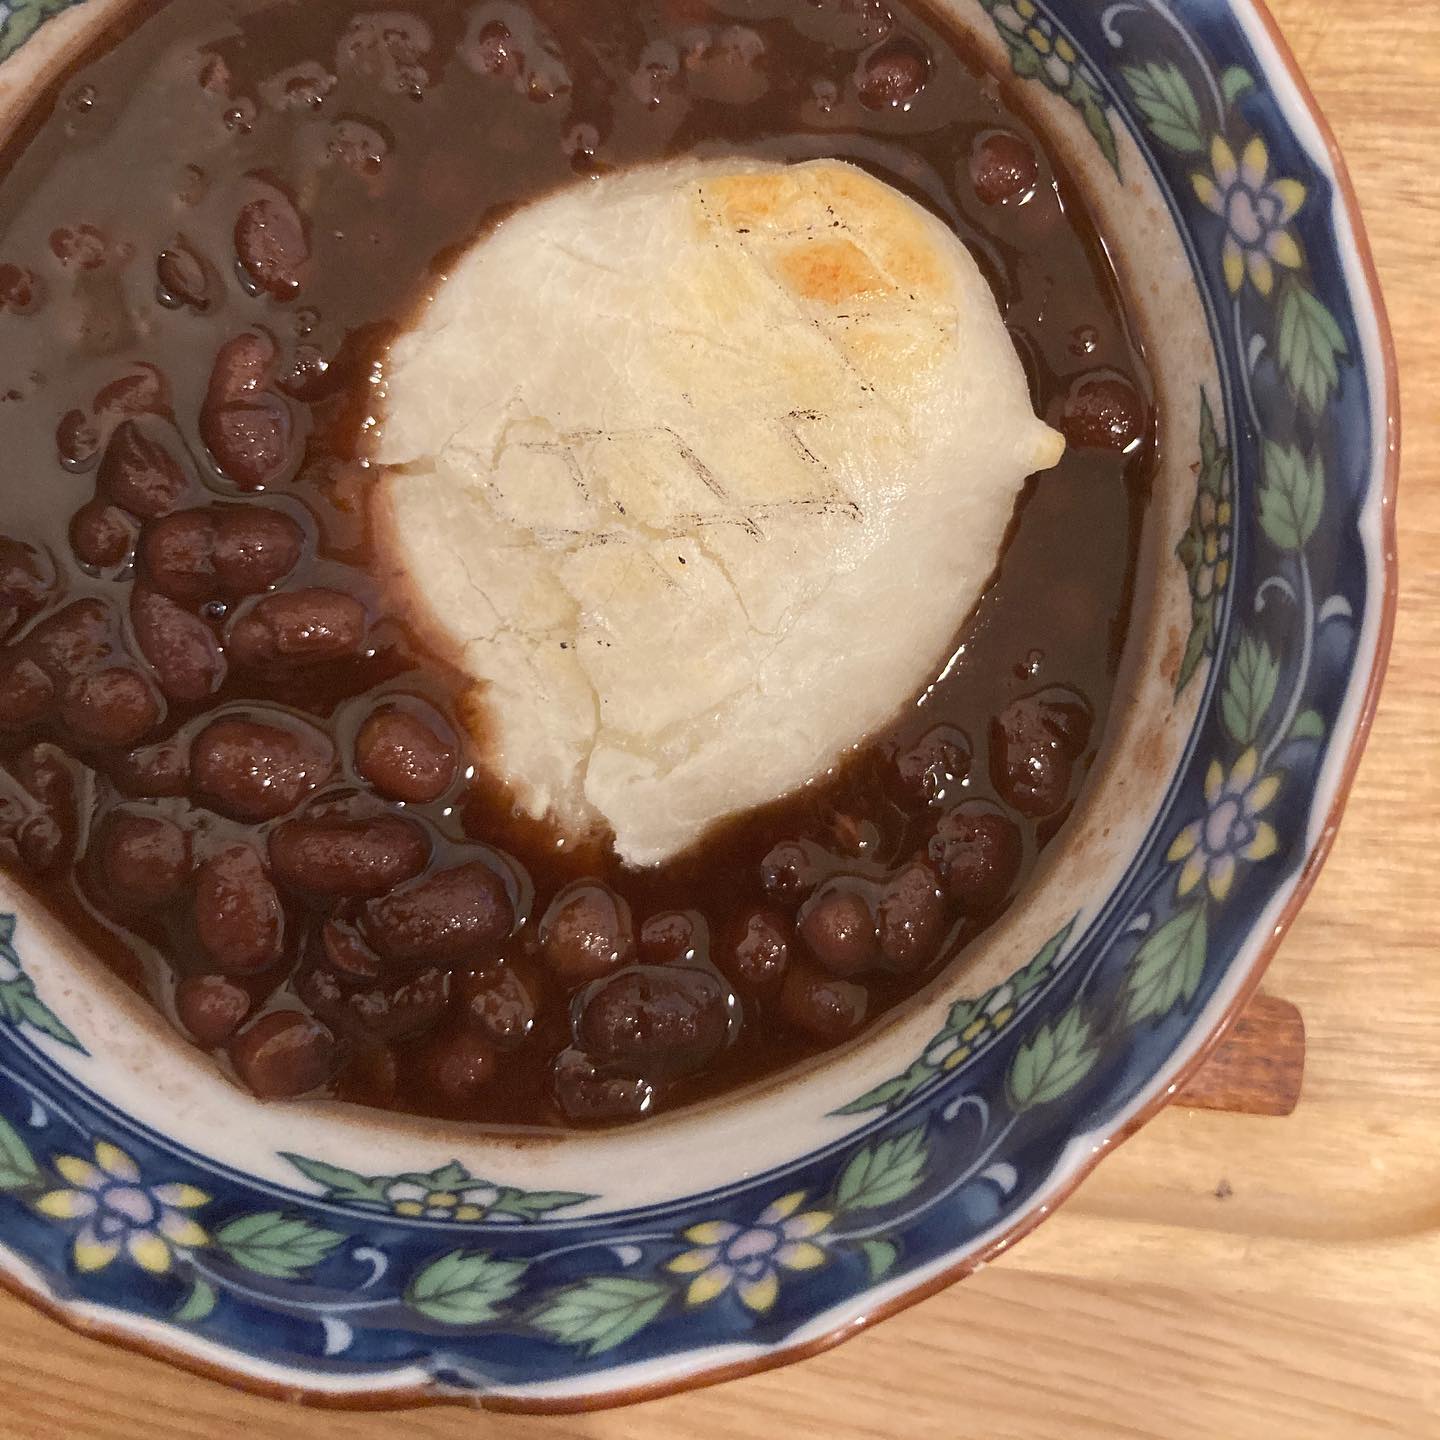 みんな小豆炊いてるから食べたくなったおしるこ島根のおばちゃんが送ってくれな餅と共に (Instagram)